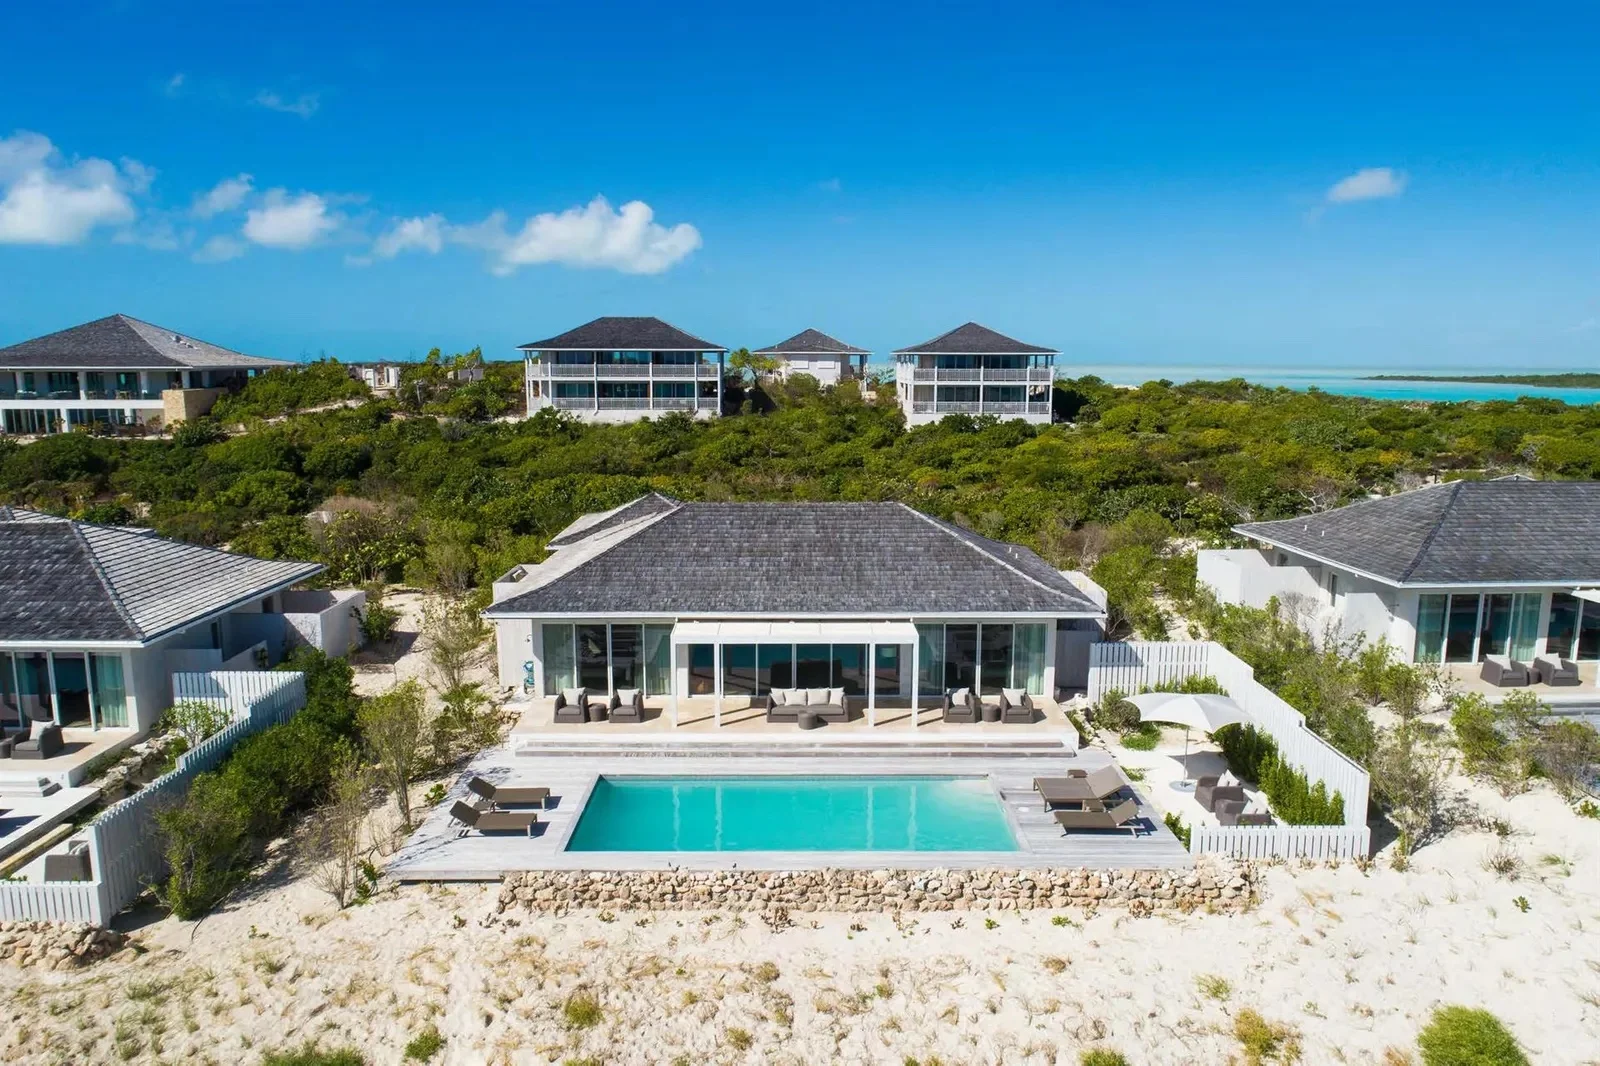 Luxury villa in Turks and Caicos